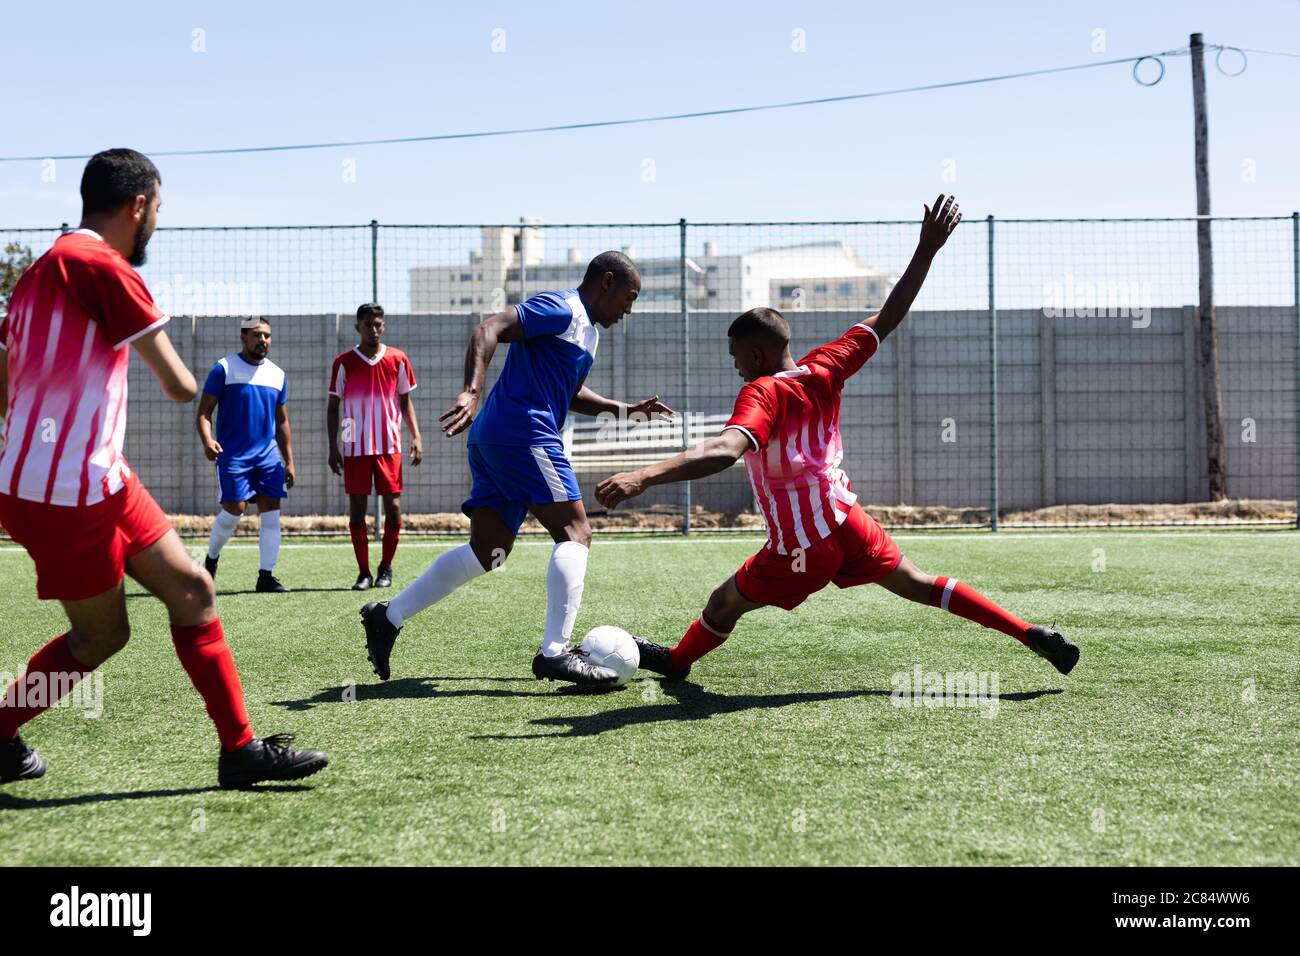 Deux équipes multiethniques de hommes de cinq joueurs de football de côté portant une bande d'équipe jouant un match sur un terrain de sport au soleil, s'attaquant et donnant sur bal Banque D'Images